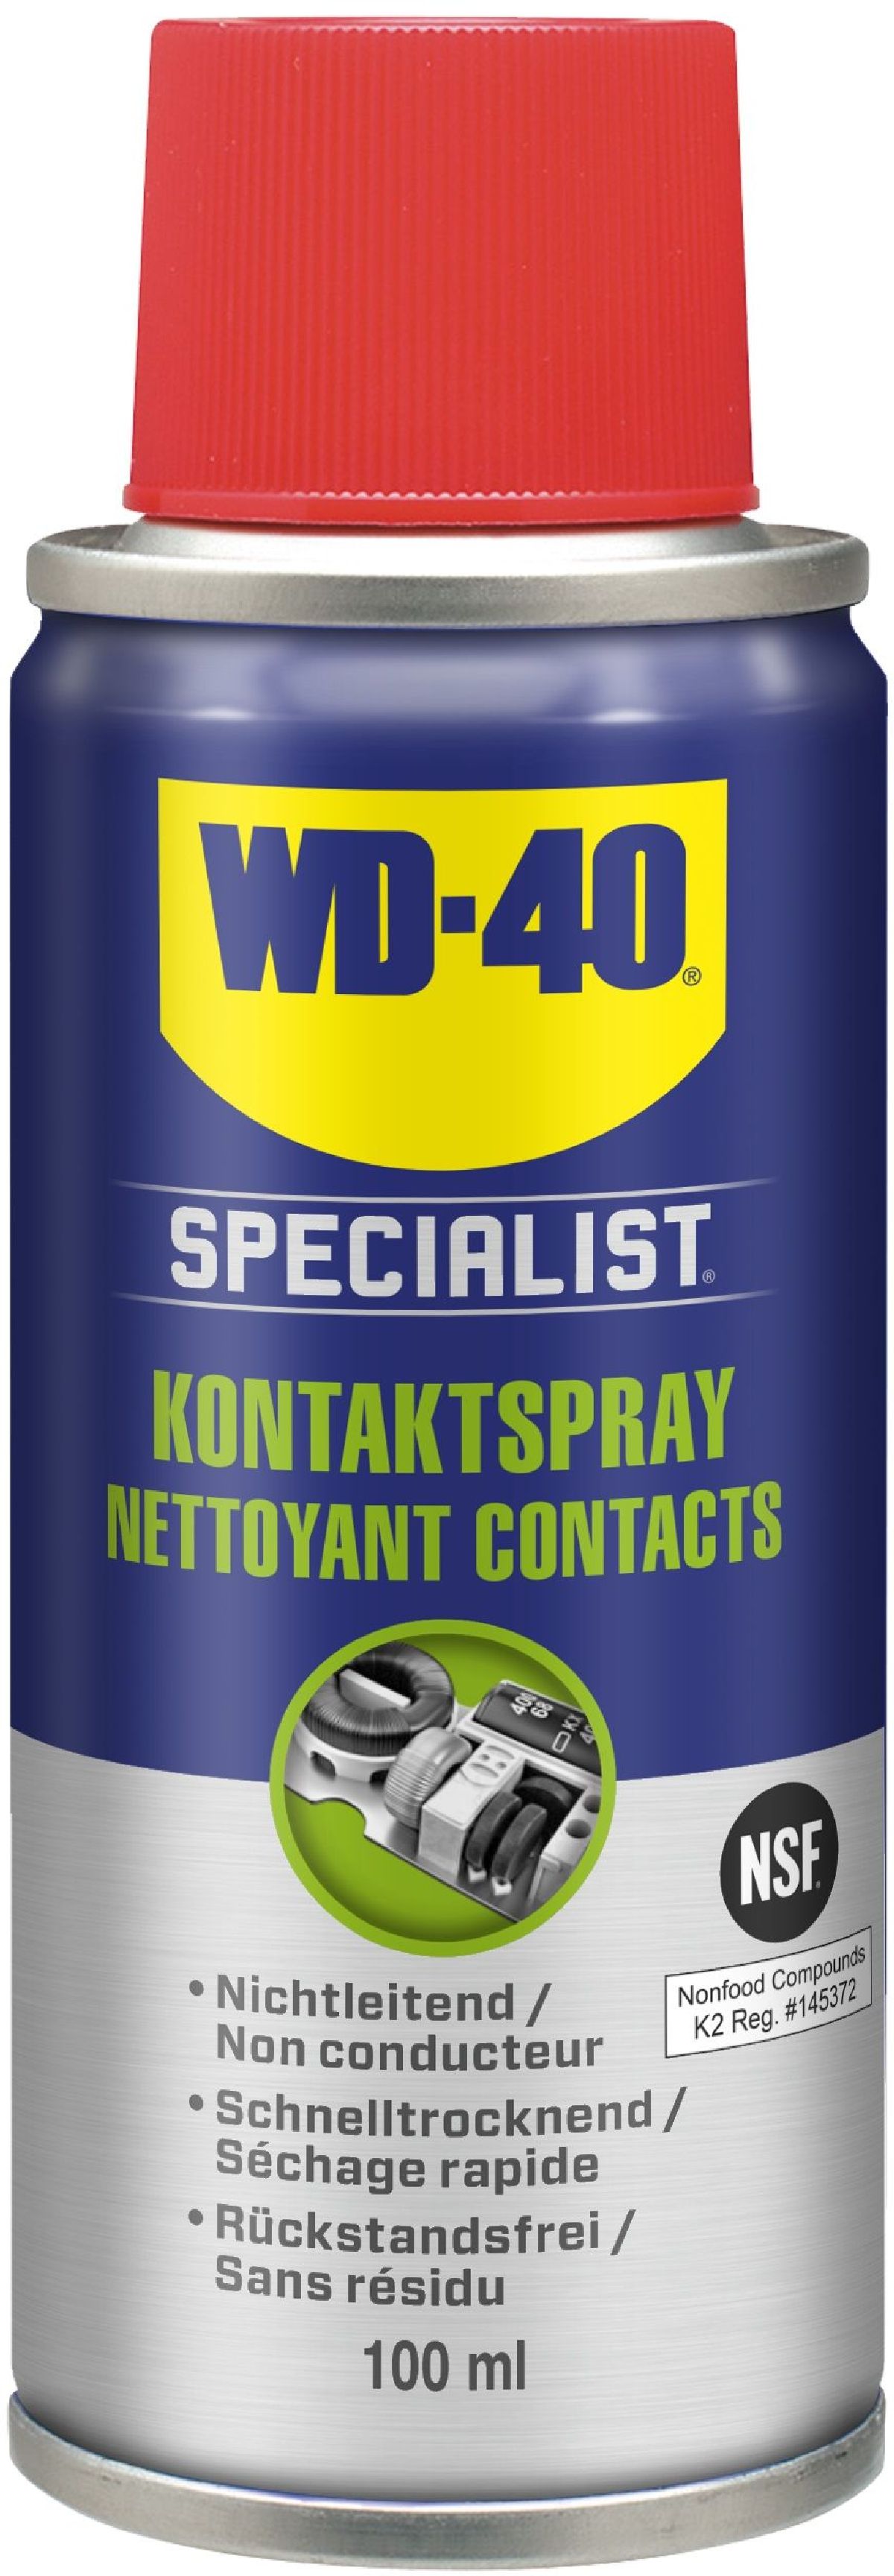 Gesamtsortiment / Schmiermittel + Chemie Specialist - / - Krautli (Schweiz) + WD-40 Specialist WD-40 / Handpflege / AG Shop WD-40